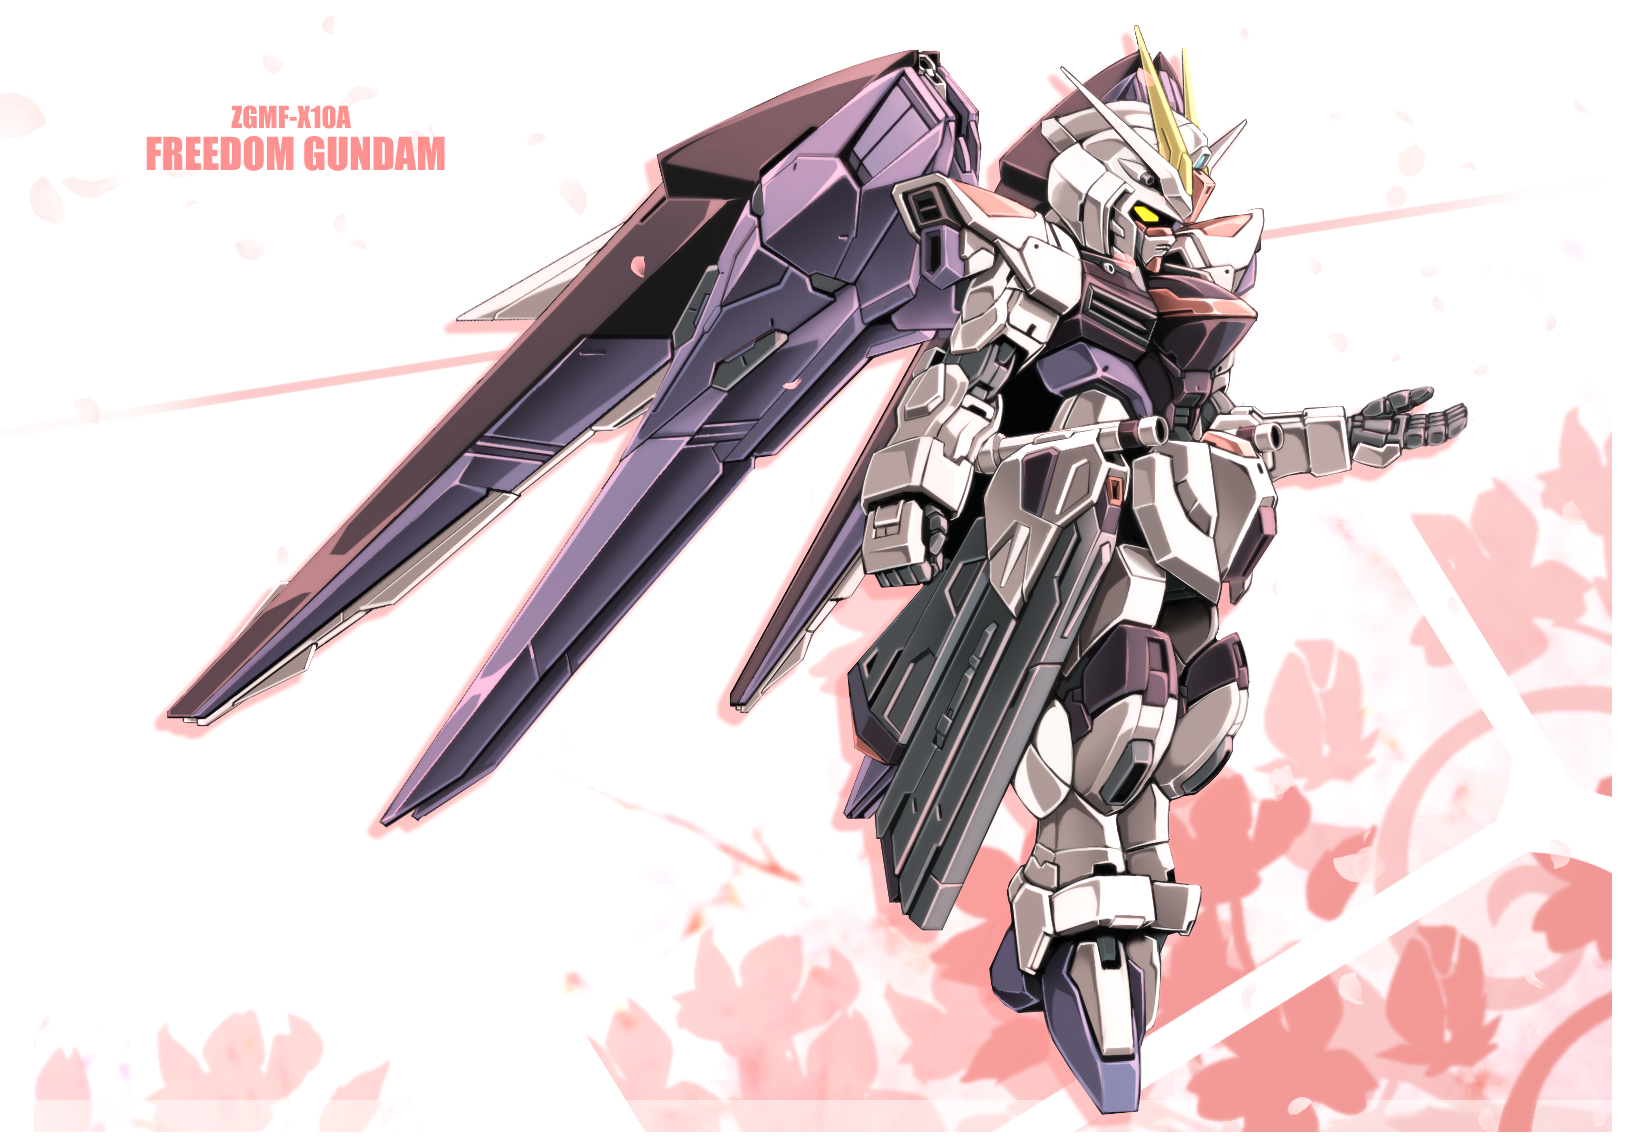 Anime Mechs Super Robot Wars Mobile Suit Gundam SEED Mobile Suit Gundam SEED Destiny Freedom Gundam  1637x1144